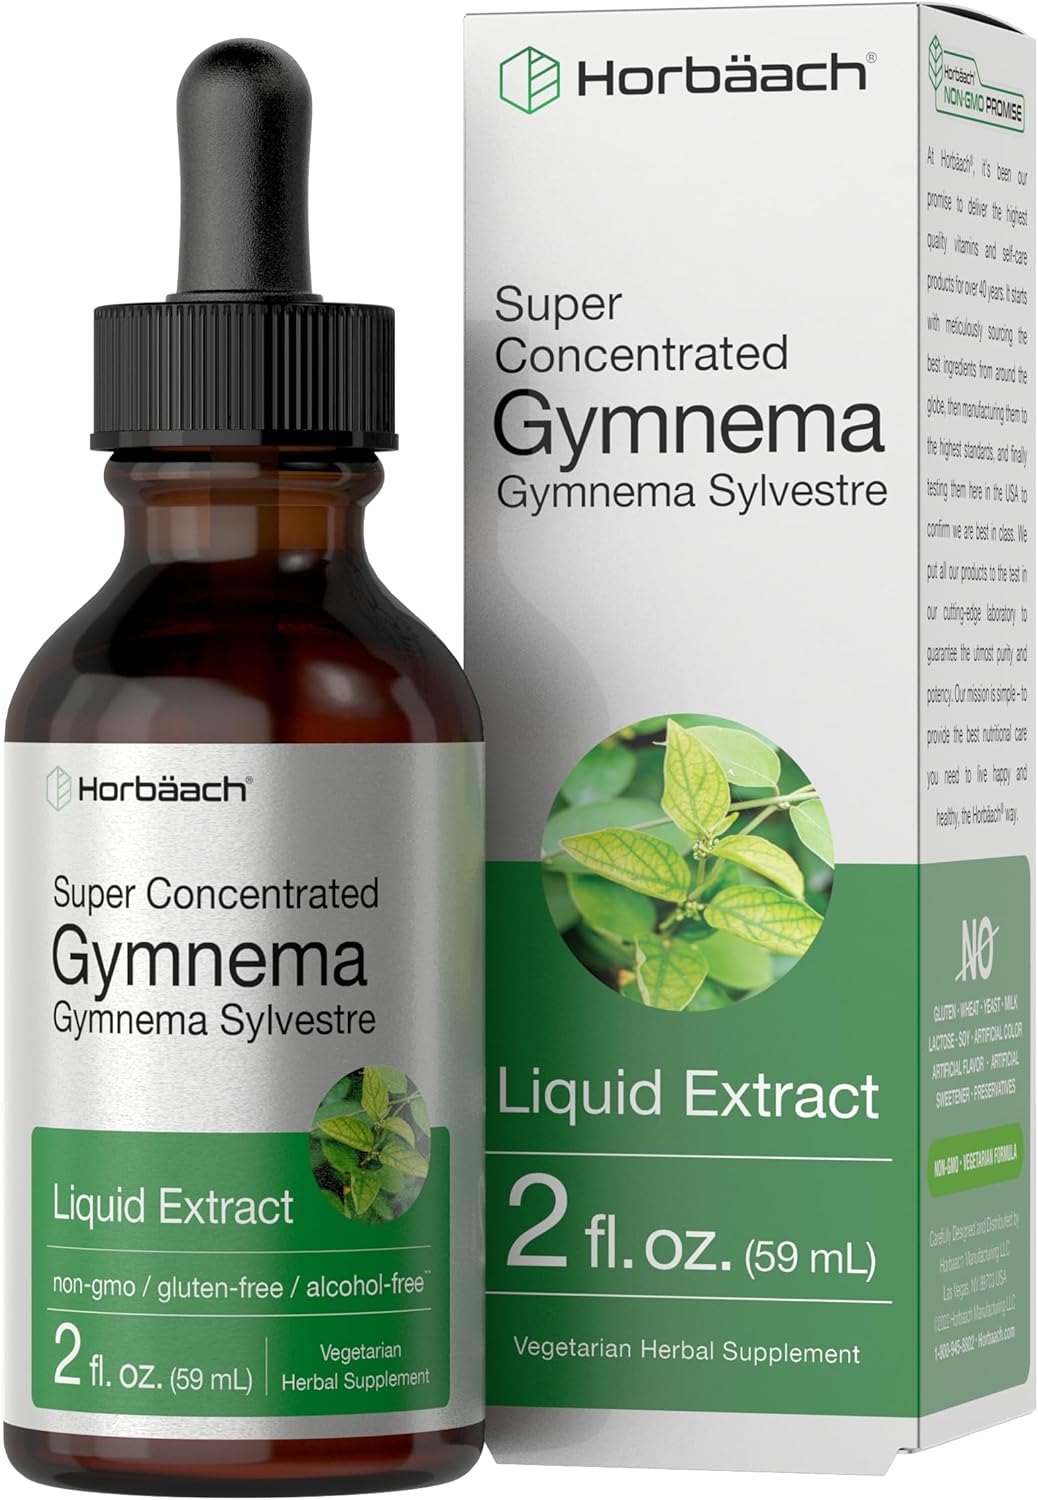 Horbach Gymnema Sylvestre Liquid | 2 fl oz | Alcohol Free Supplement | Super Concentrated Leaf Extract Drops | Vegetarian, Non-GMO, Gluten Free